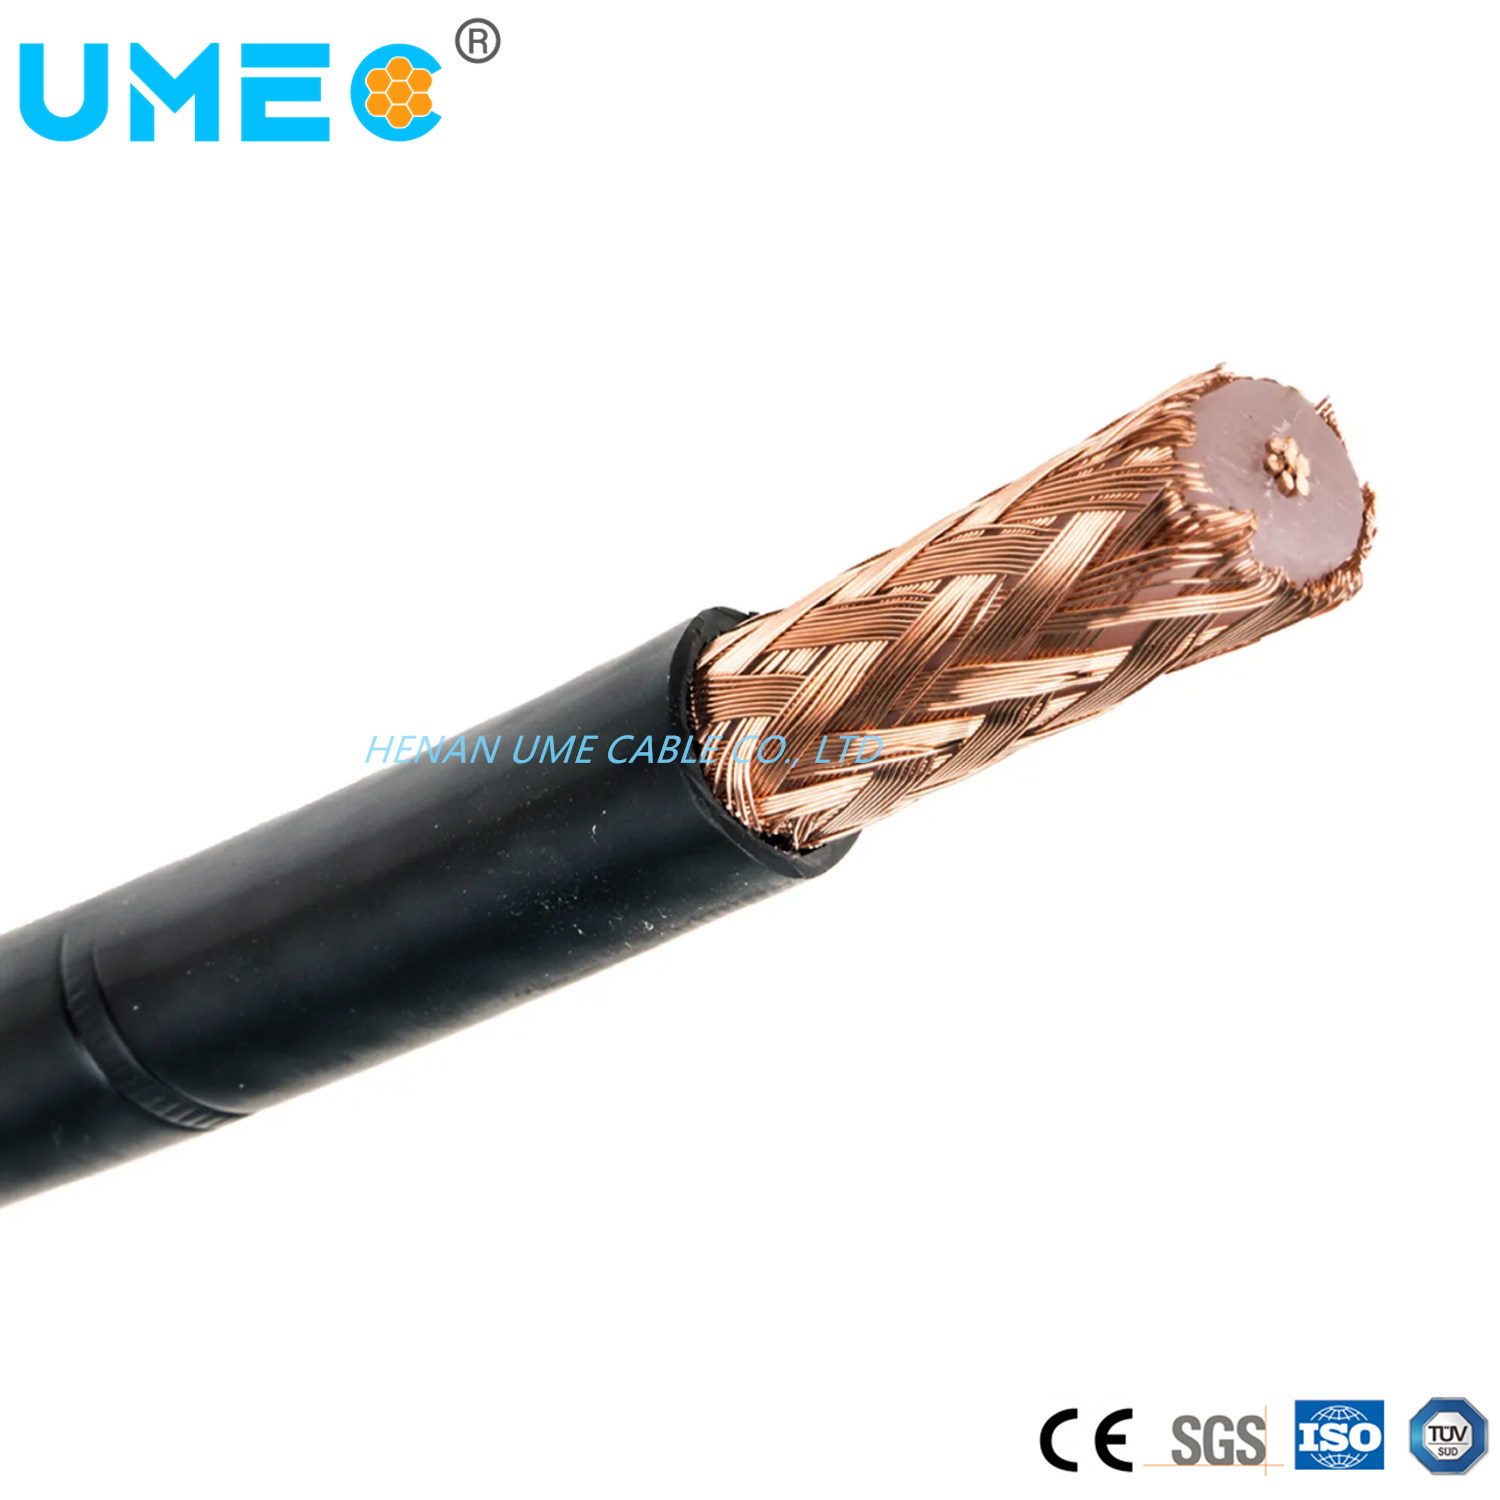 
                Высокое качество серии Rg коаксиальный кабель ISO сертификат CE коаксиальный кабель RG59 RG6 RG8 RG11
            